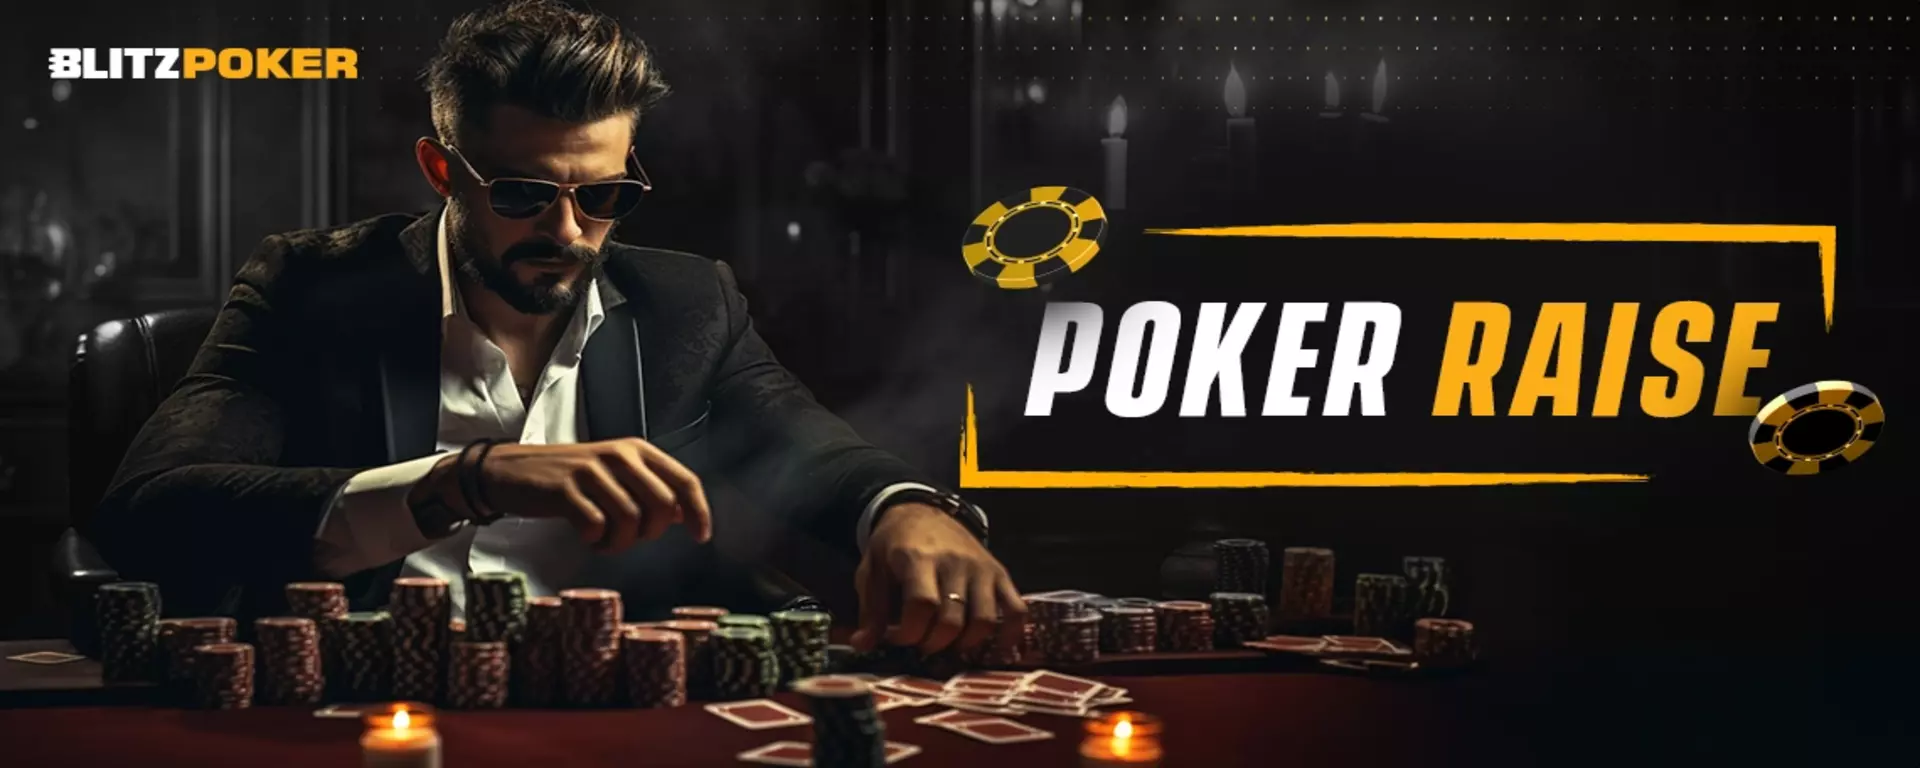 How Does Raise Work in Poker? Poker Raise Rules